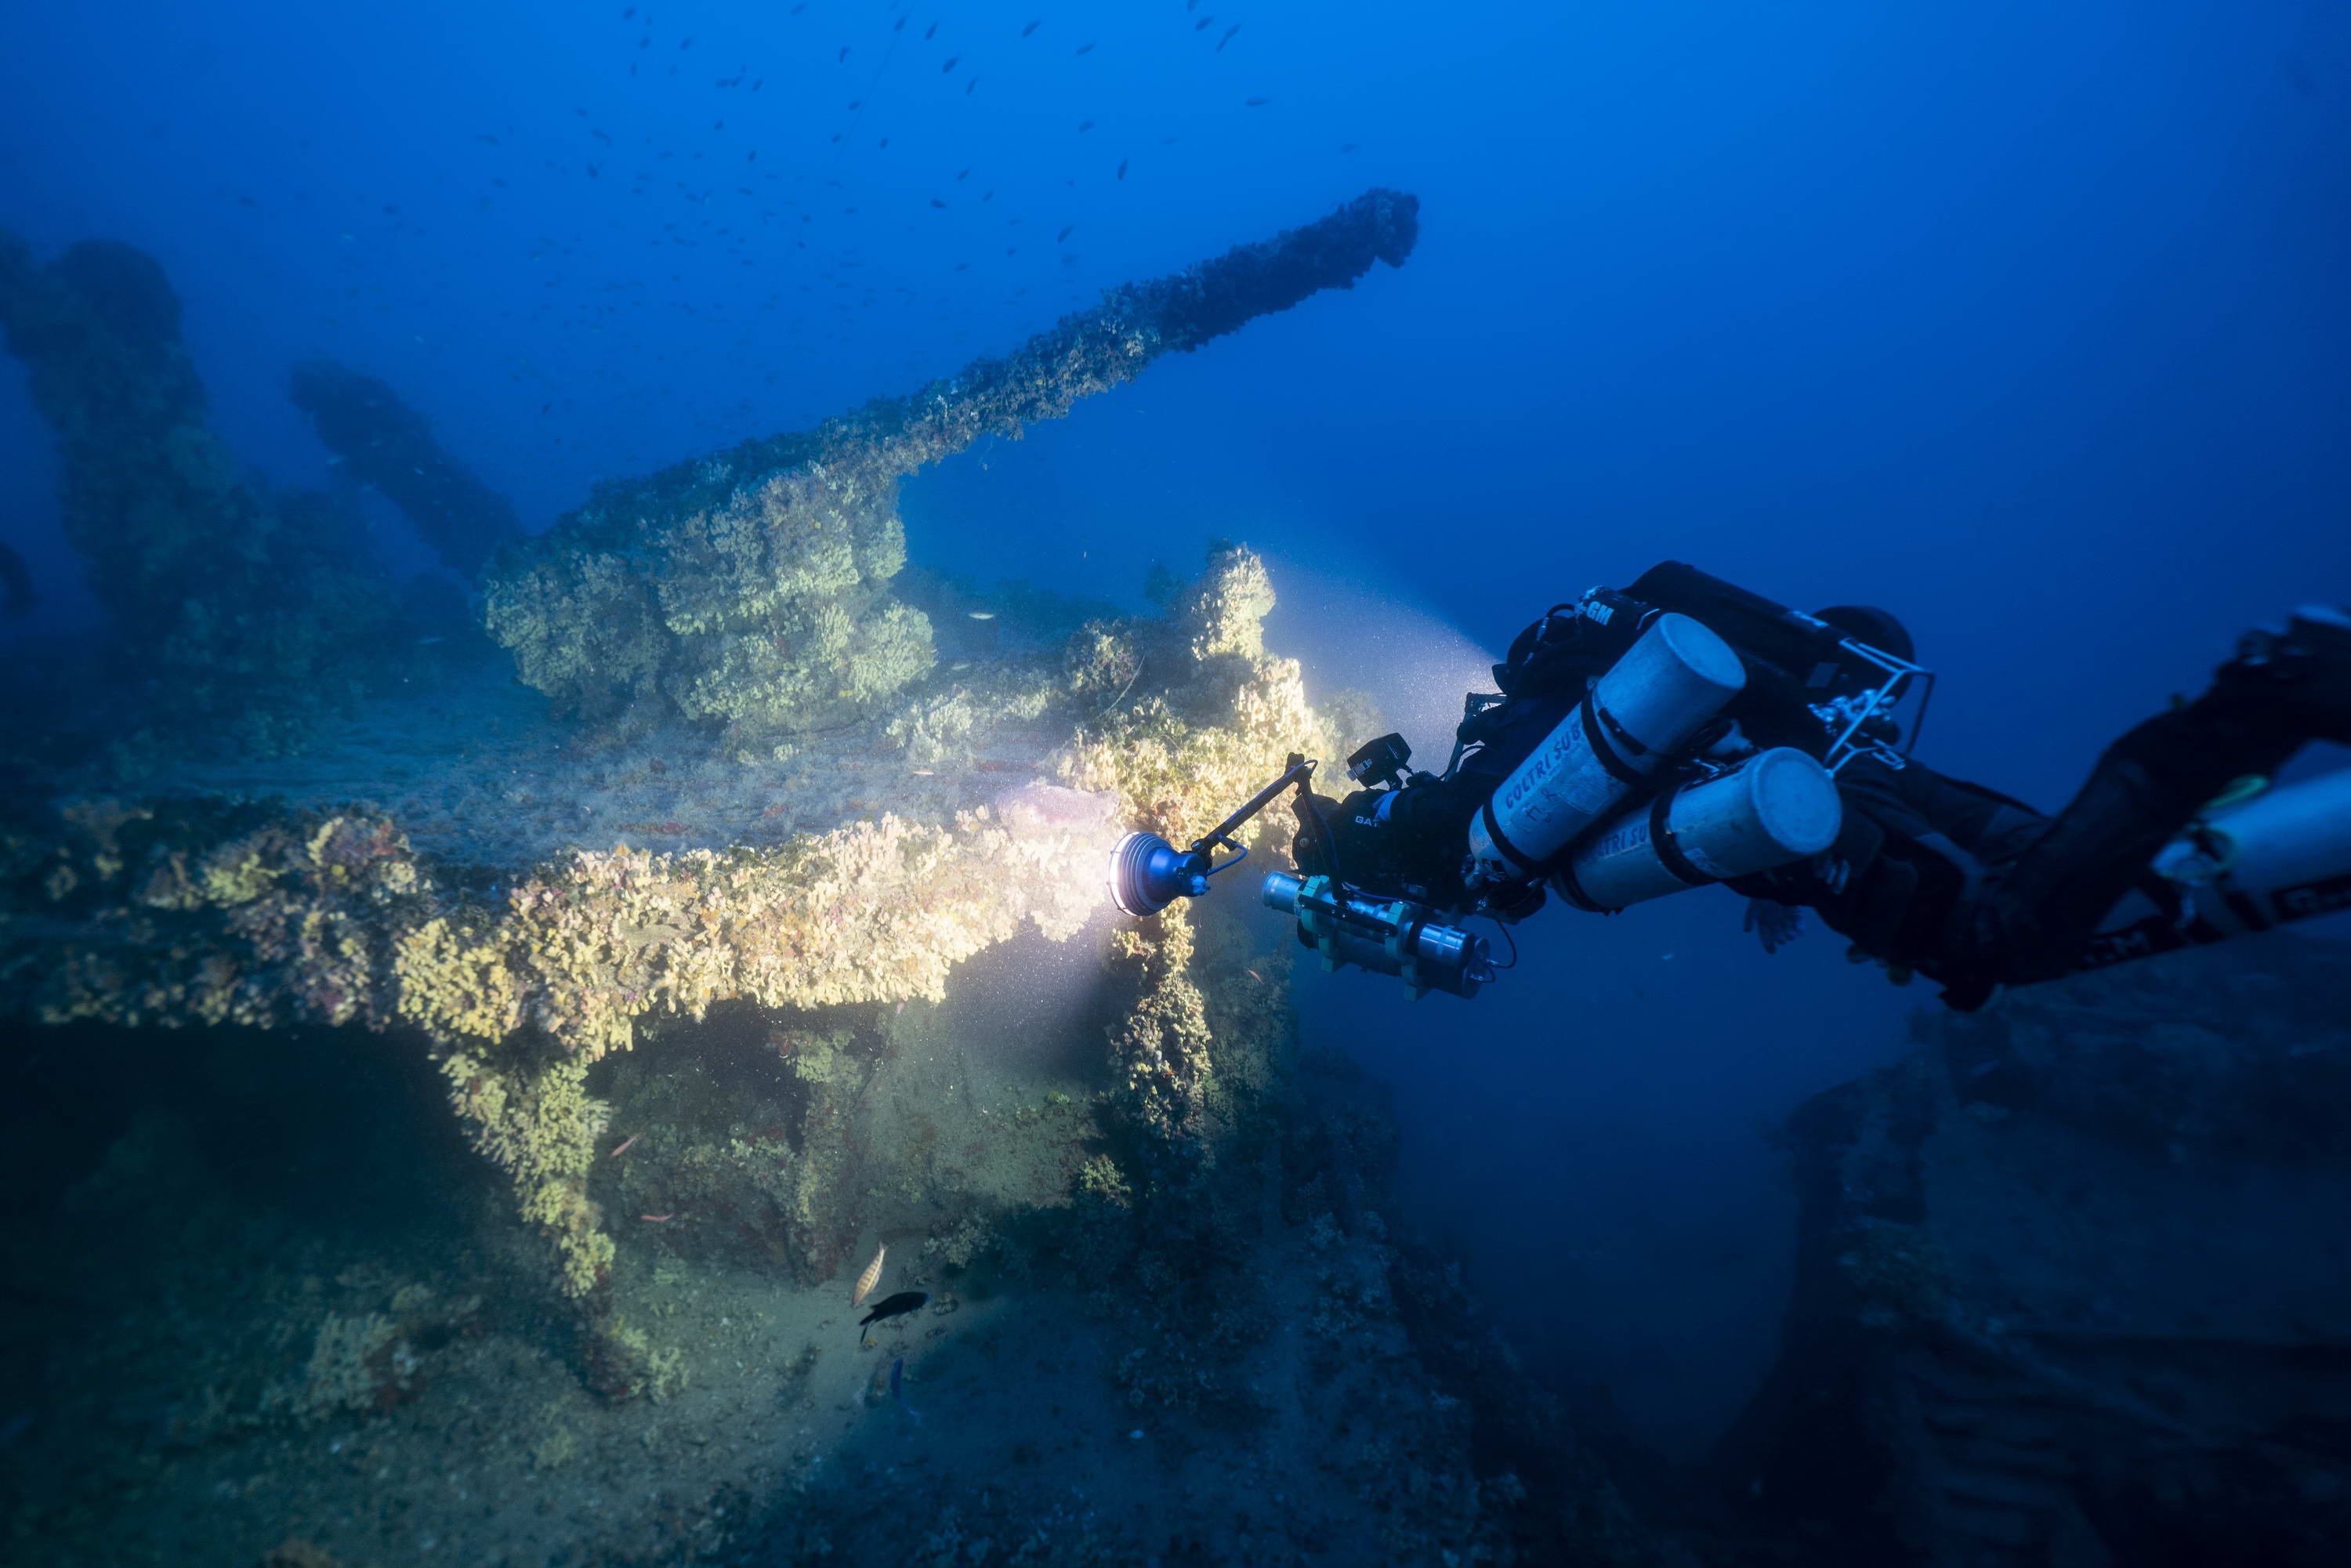 Kopie von Nasturtium_klein (c) Nasturtium  (c) Heritage Malta Wreck Dives